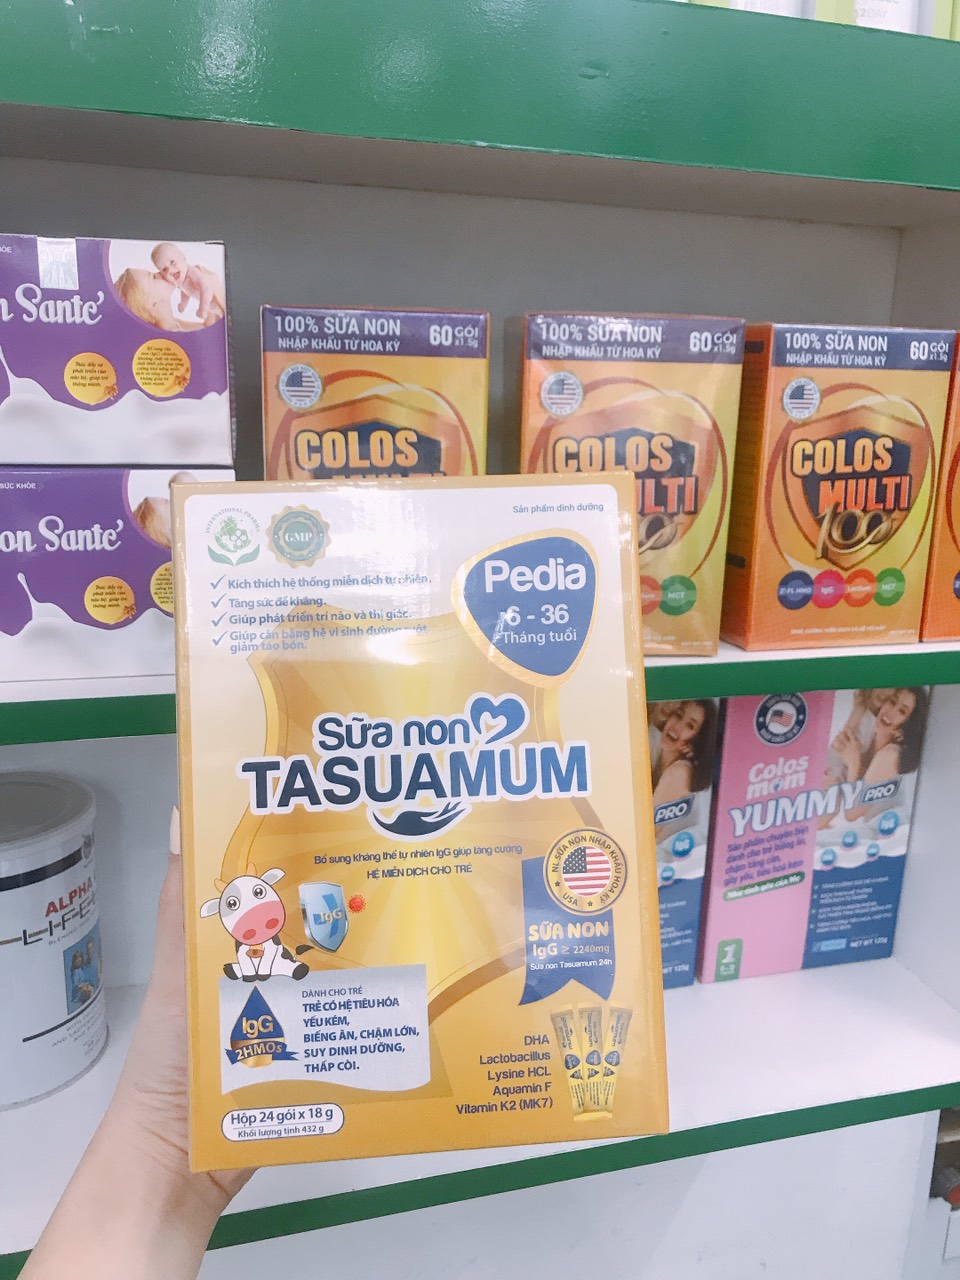 Sữa Non Tasuamum Pedia (24 gói x 18g) | Hỗ trợ trẻ biếng ăn, chậm lớn, suy dinh dưỡng, thấp còi từ 6-36 tháng tuổi | Thương hiệu Tasuamom